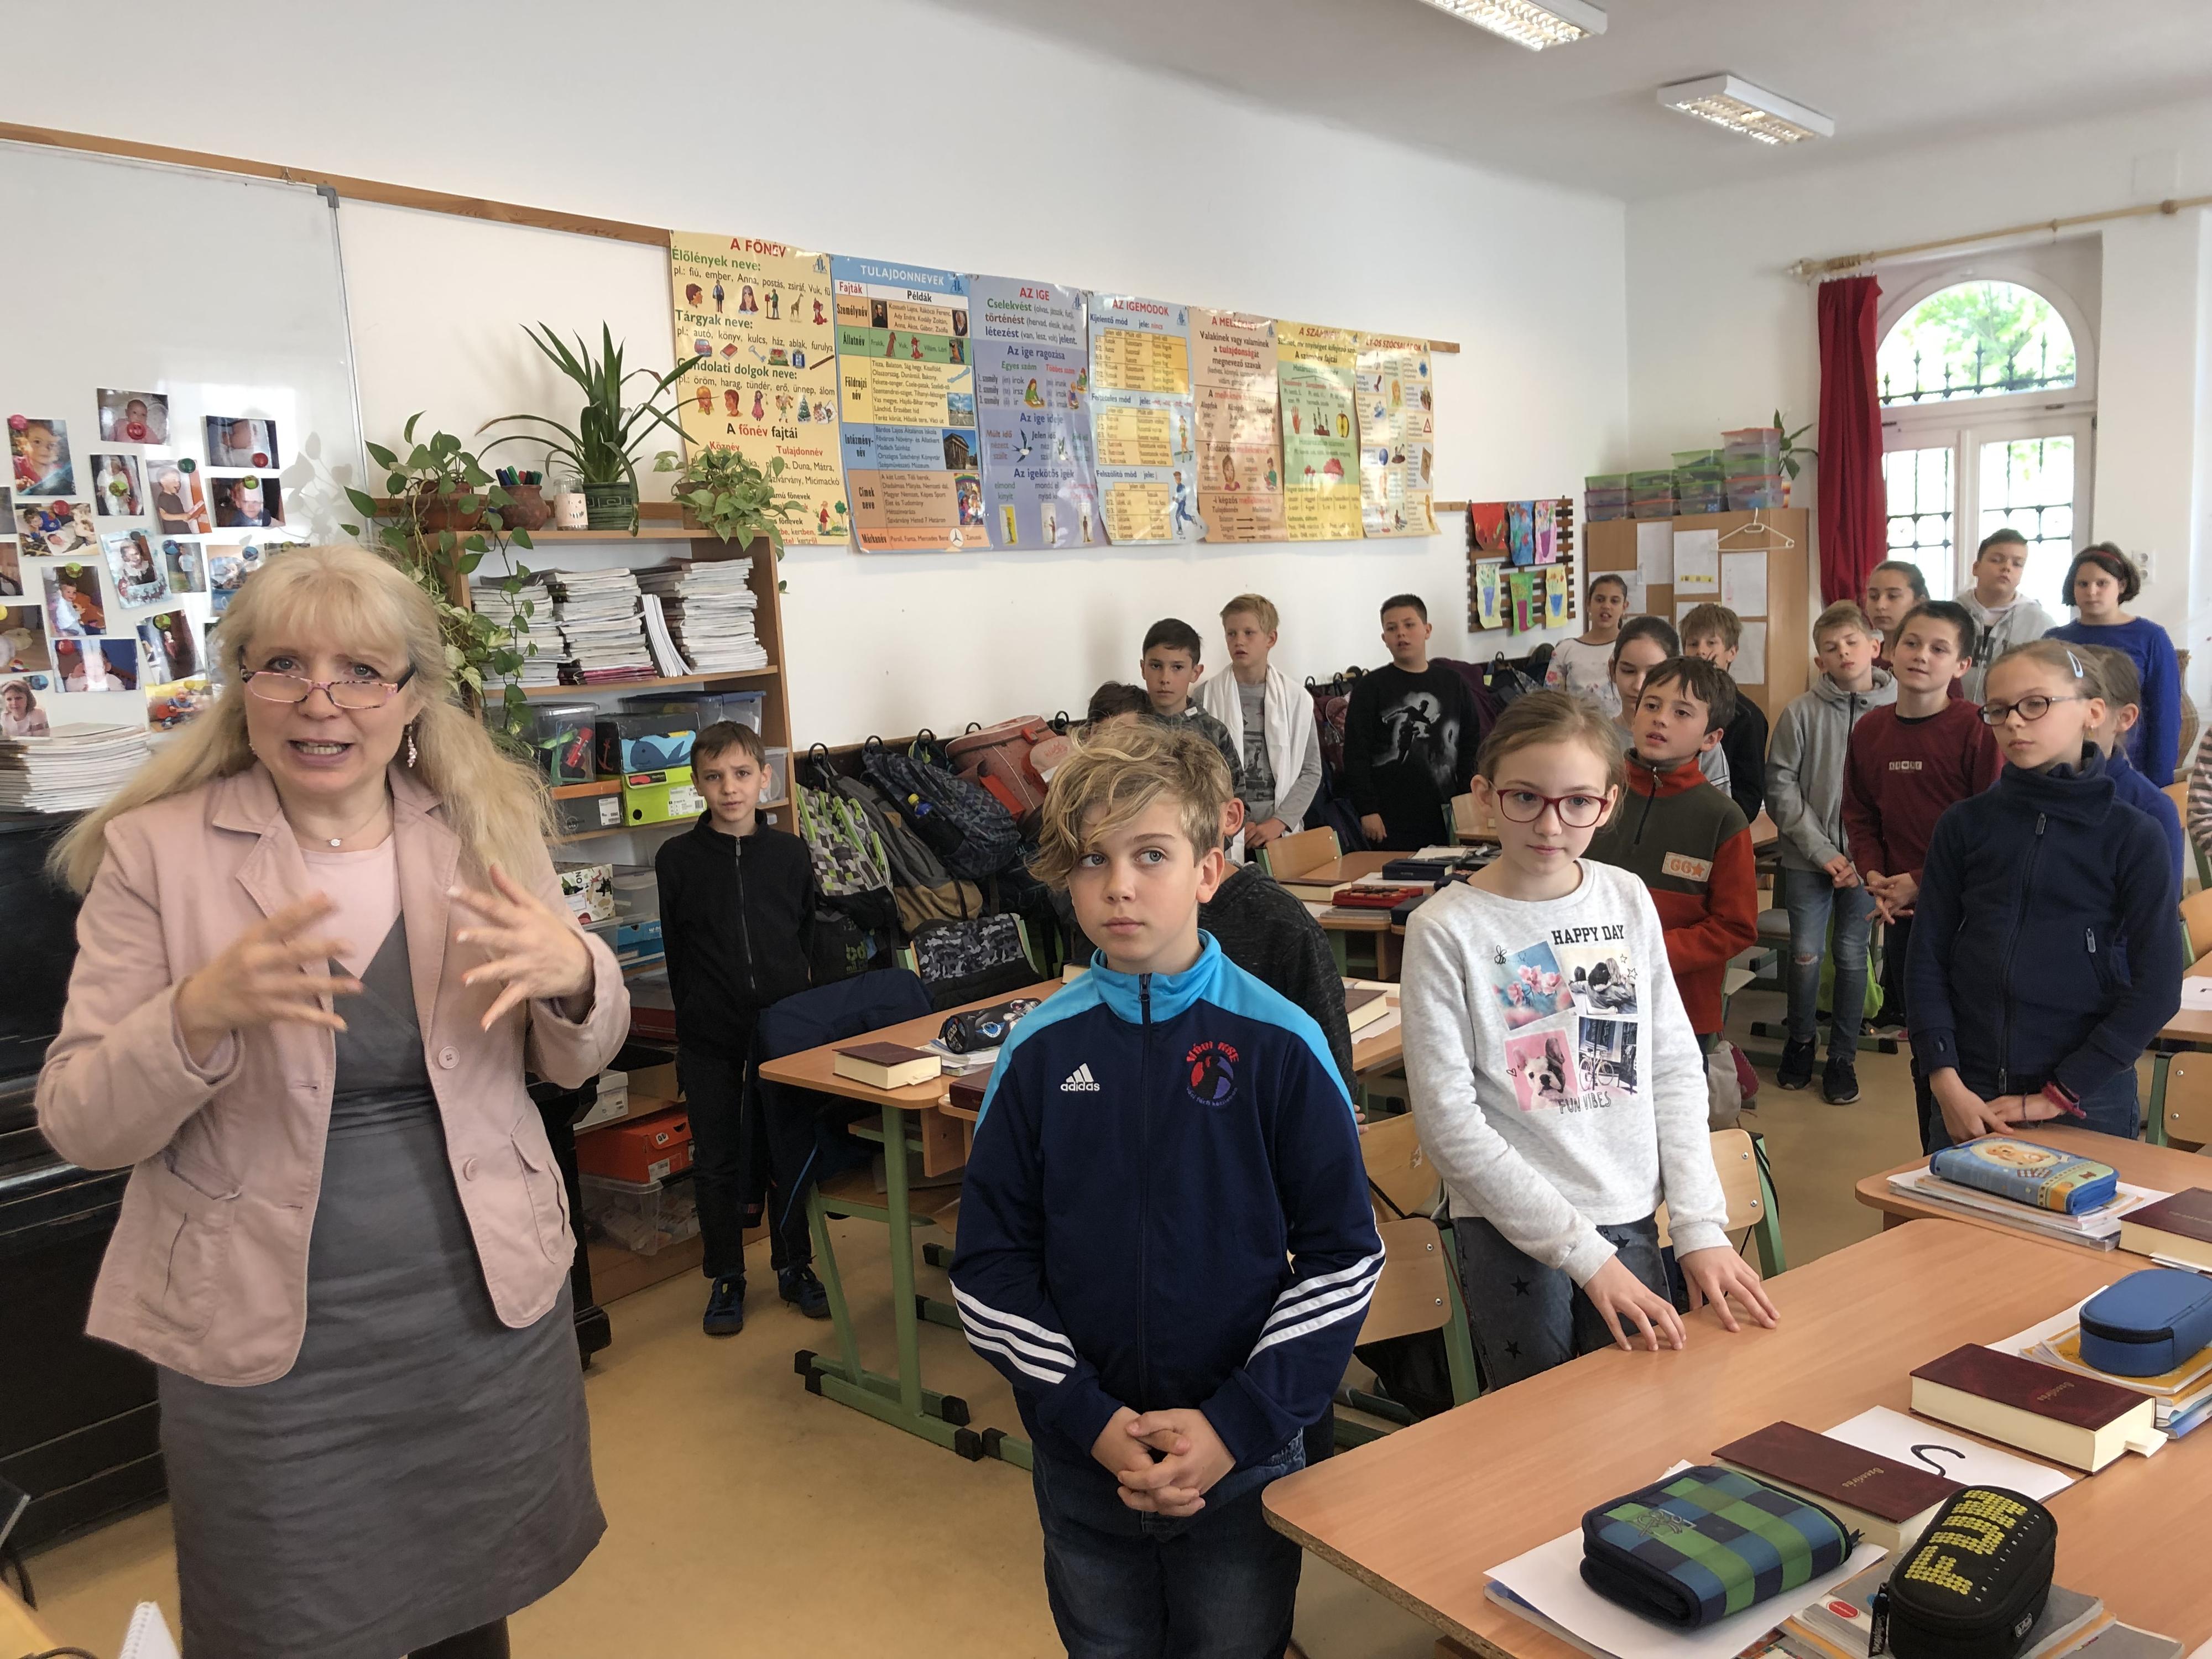 C'est l'heure du cours de religion pour ces petits Hongrois de 10 ans à l'école Karolina de Vác. [RTS - Juliette Galeazzi]